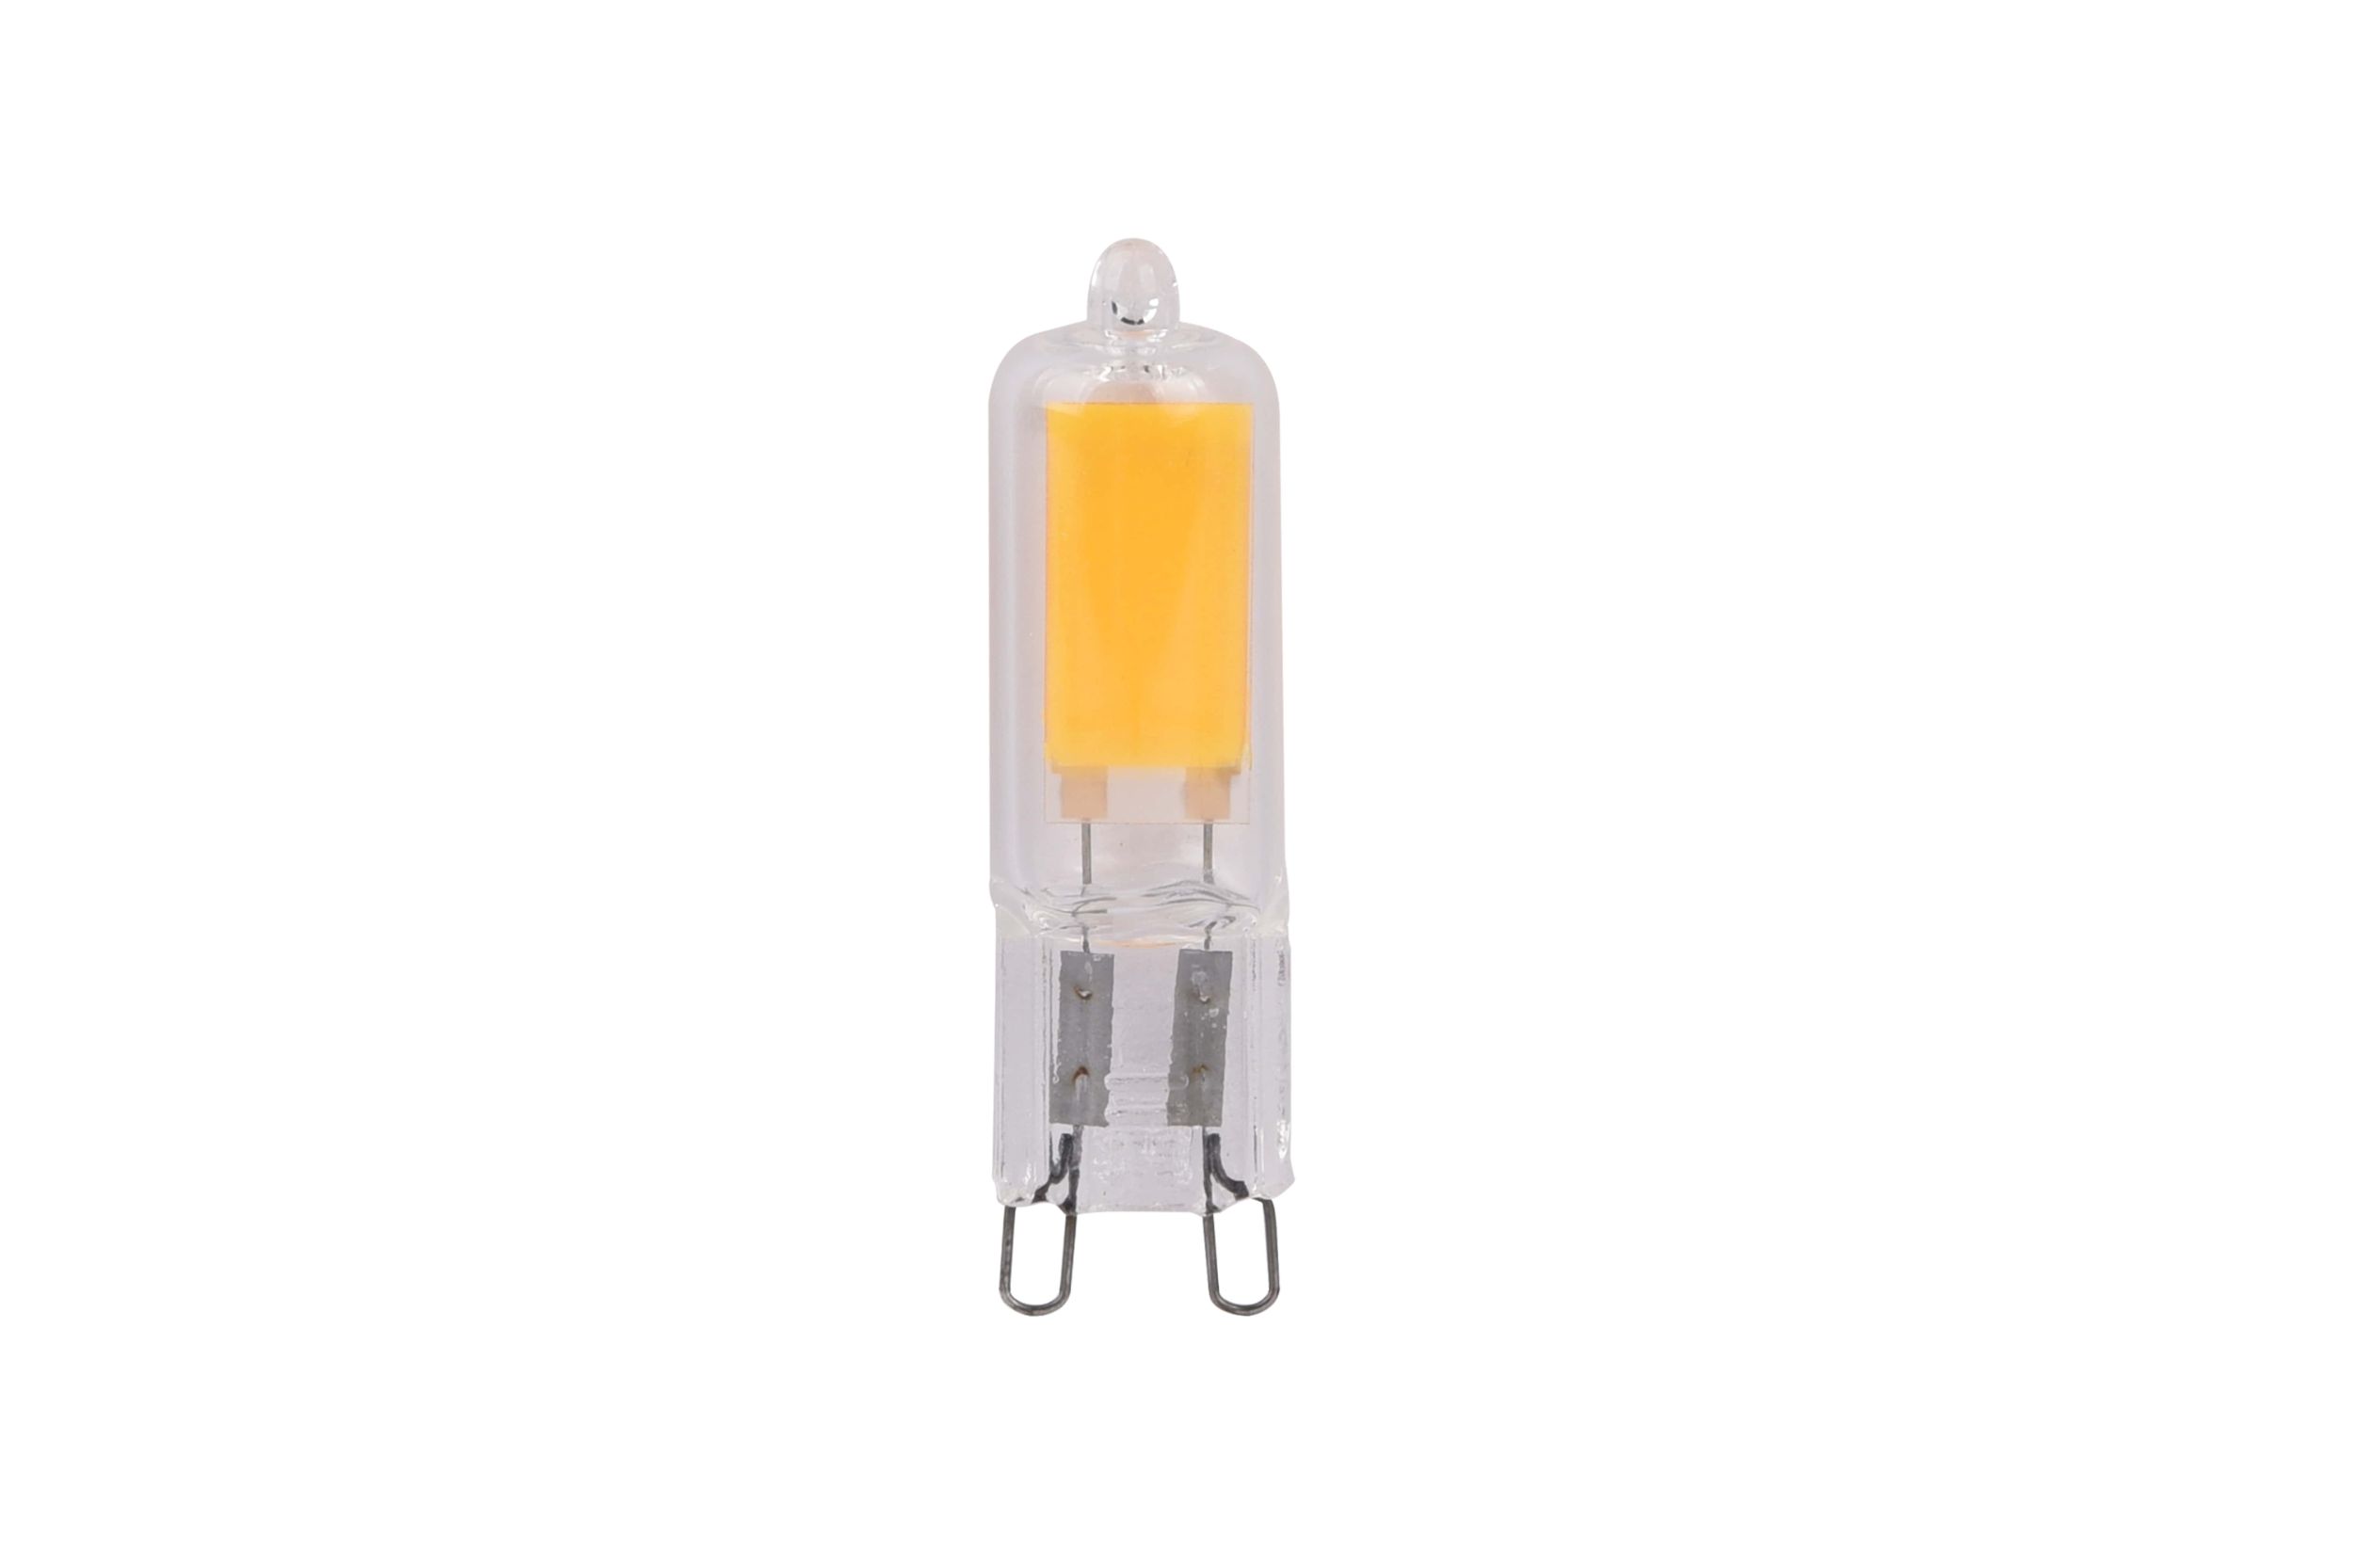 Лампочка светодиодная ЭРА STD LED JCD-3,5W-GL-827-G9 G9 3,5Вт капсула теплый белый свет